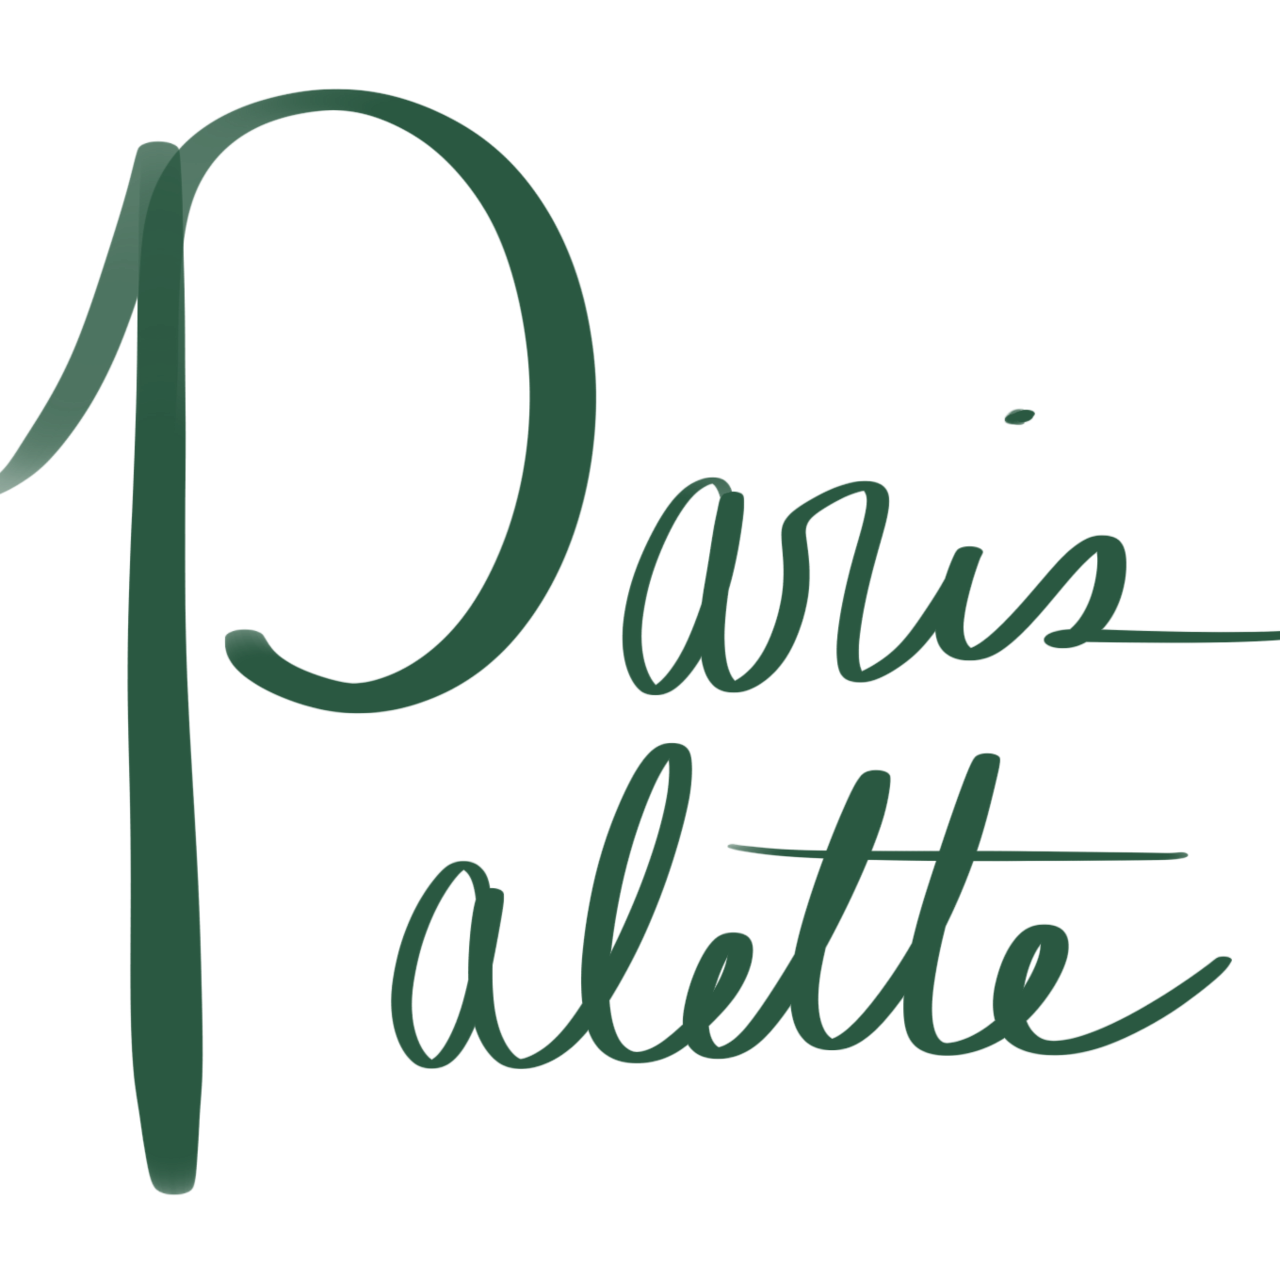 The Paris Palette 